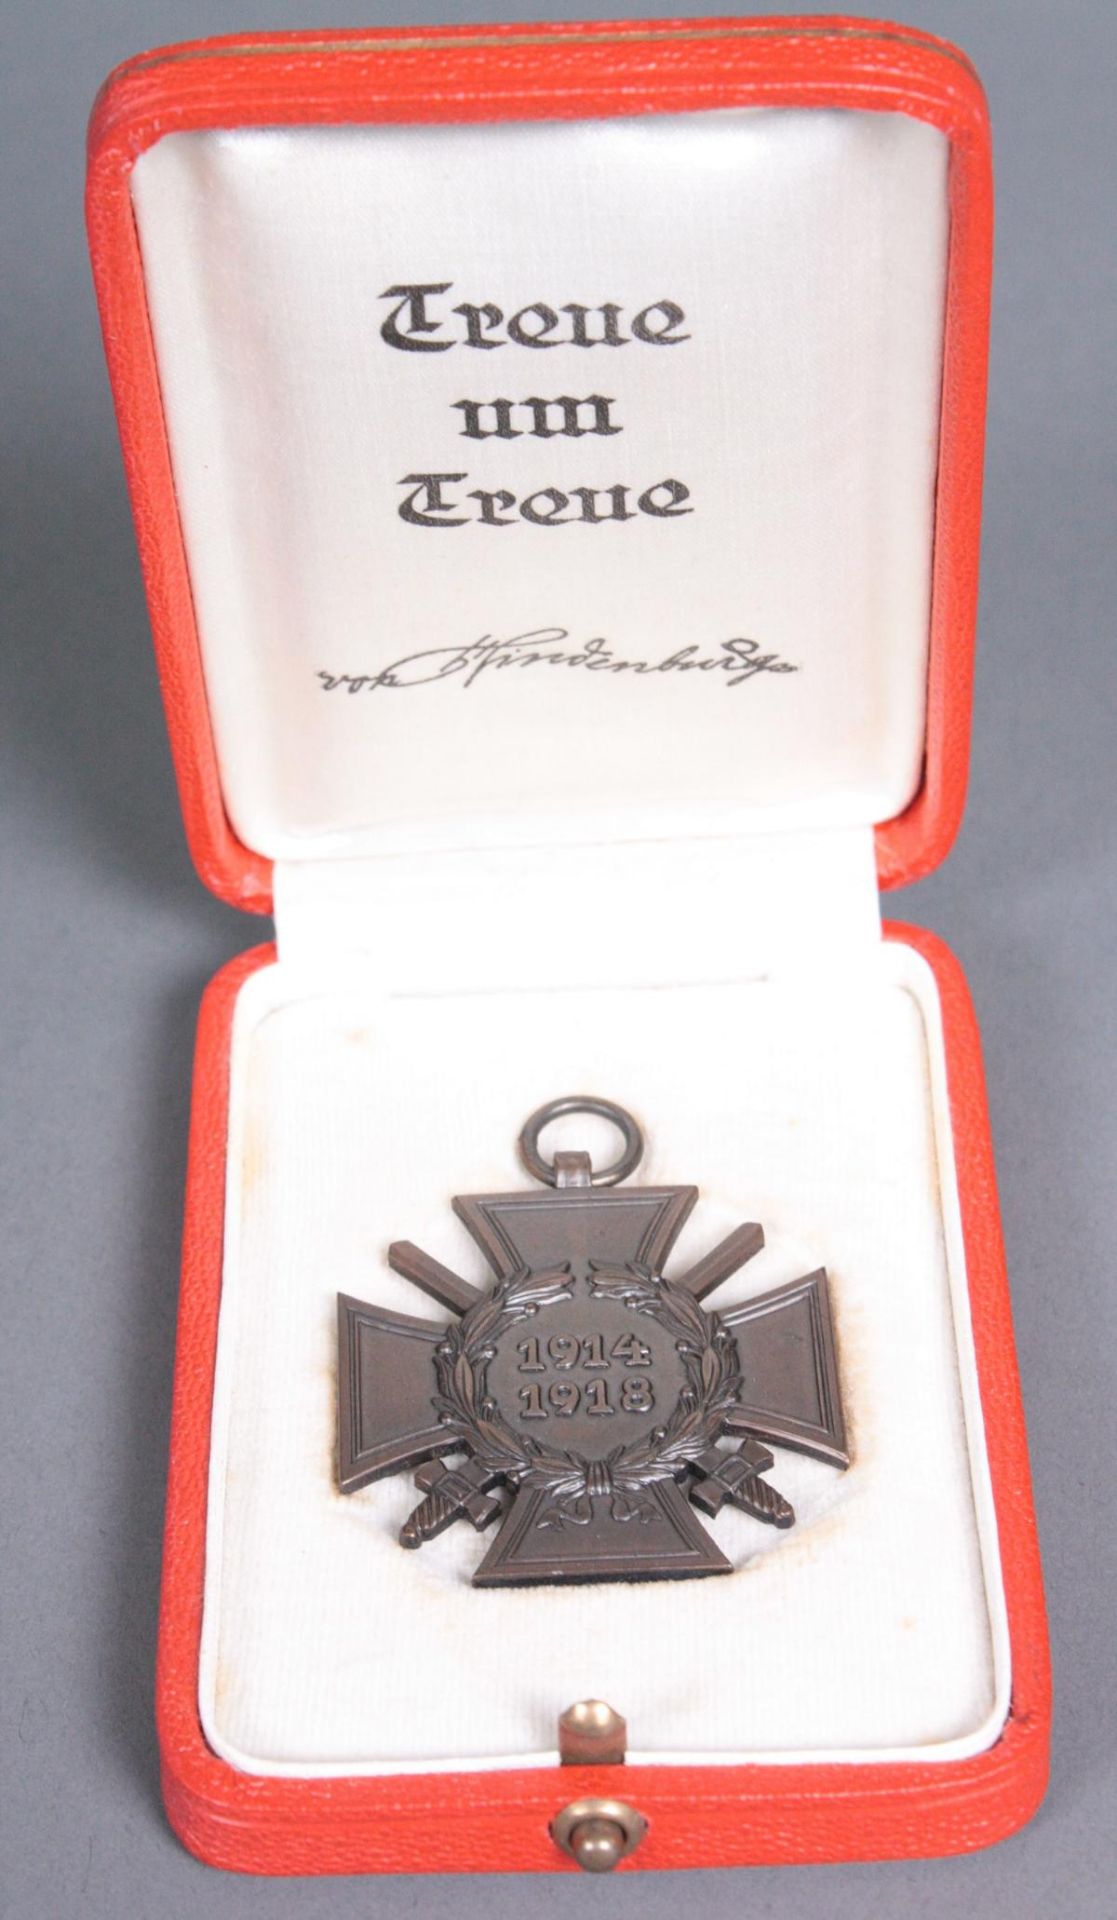 Ehrenkreuz für Frontkämpfer, im roten Etui "Treue um Treue